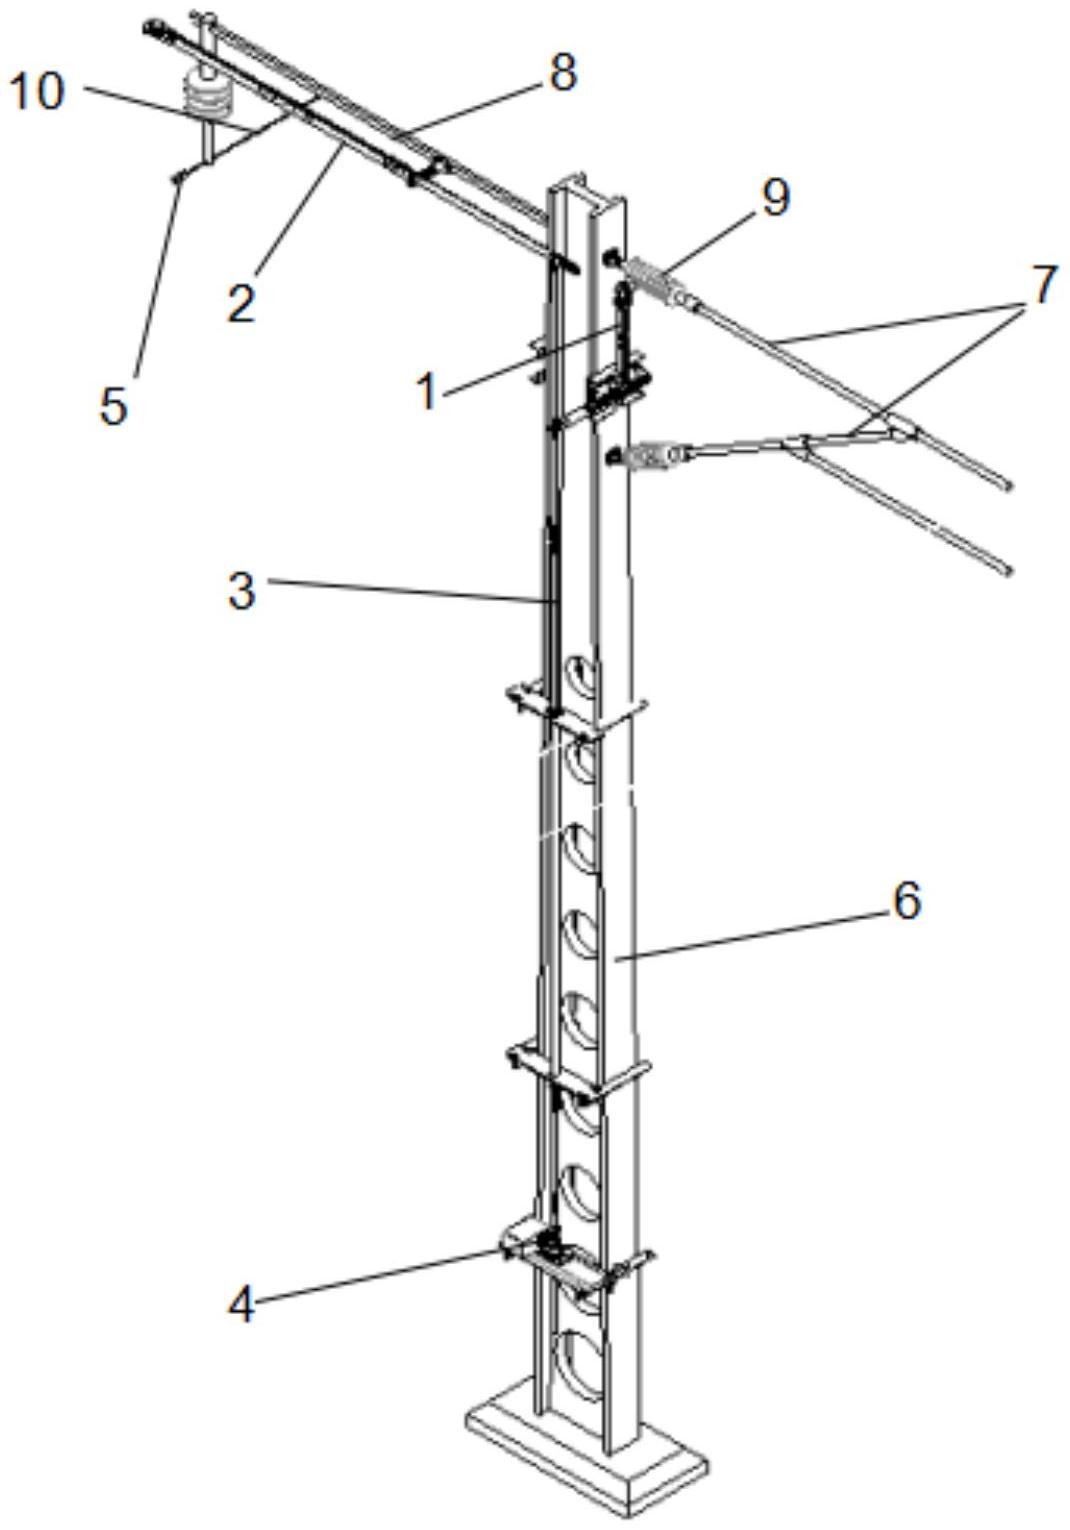 包括:沿接触网支柱竖直方向安装在支柱上的伸缩顶杆,所述伸缩顶杆的